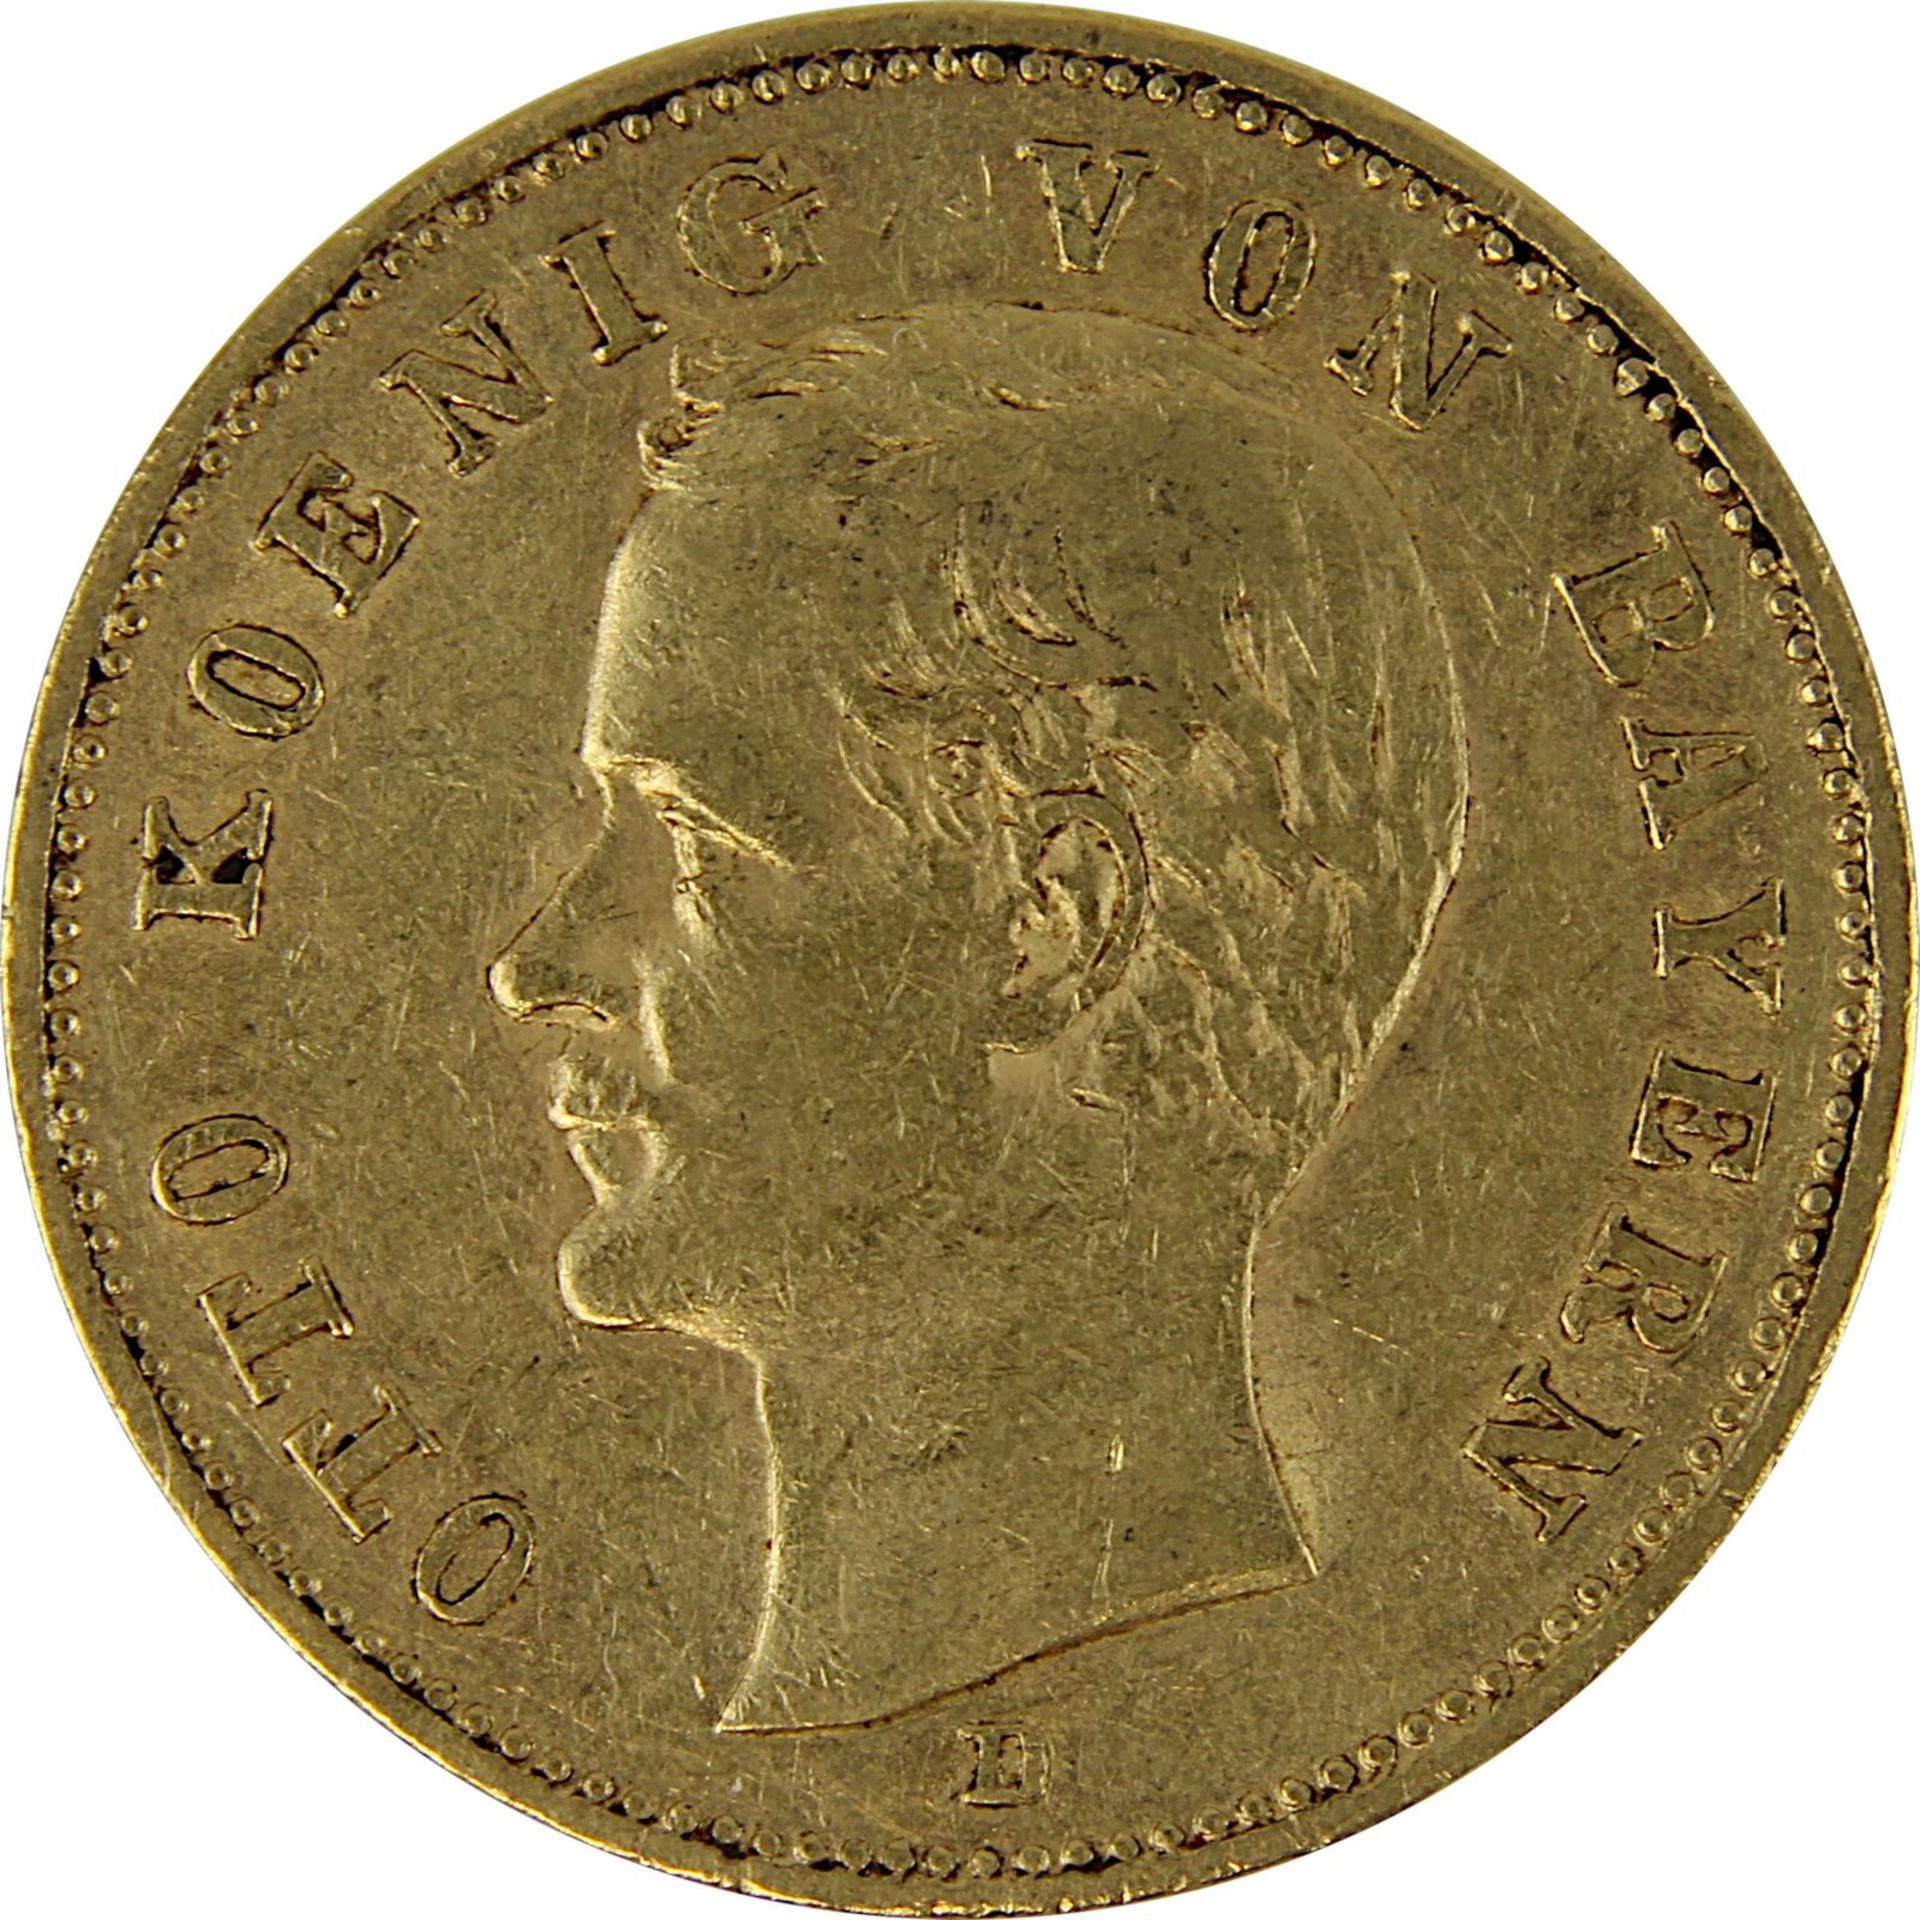 Goldmünze zu 20 Mark, Bayern - Deutsches Reich 1895, Avers: Kopf Otto König von Bayern nach links u. - Bild 2 aus 3